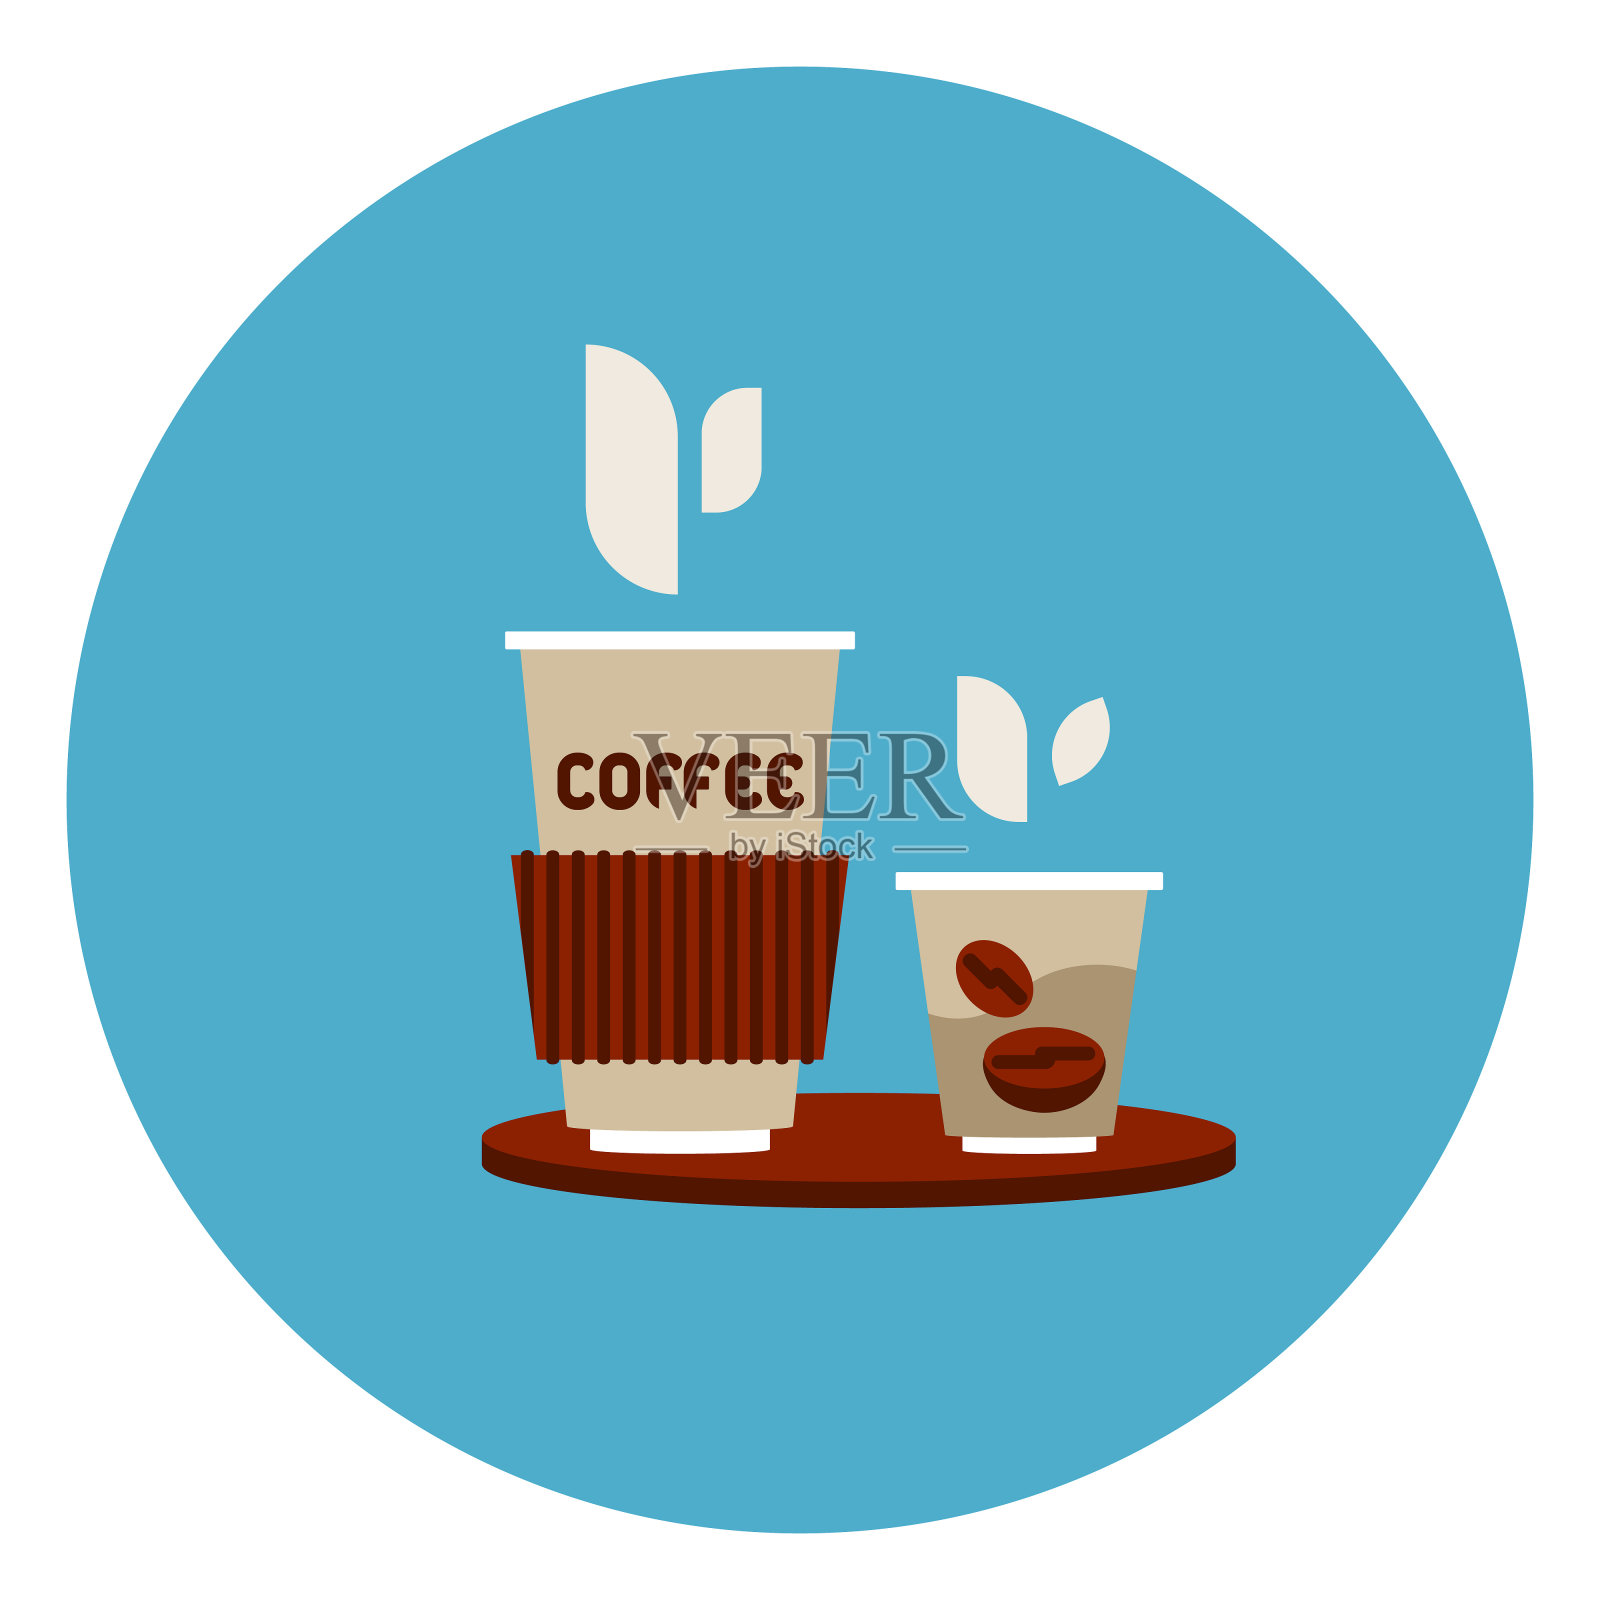 去咖啡杯图标上的蓝色圆形背景插画图片素材